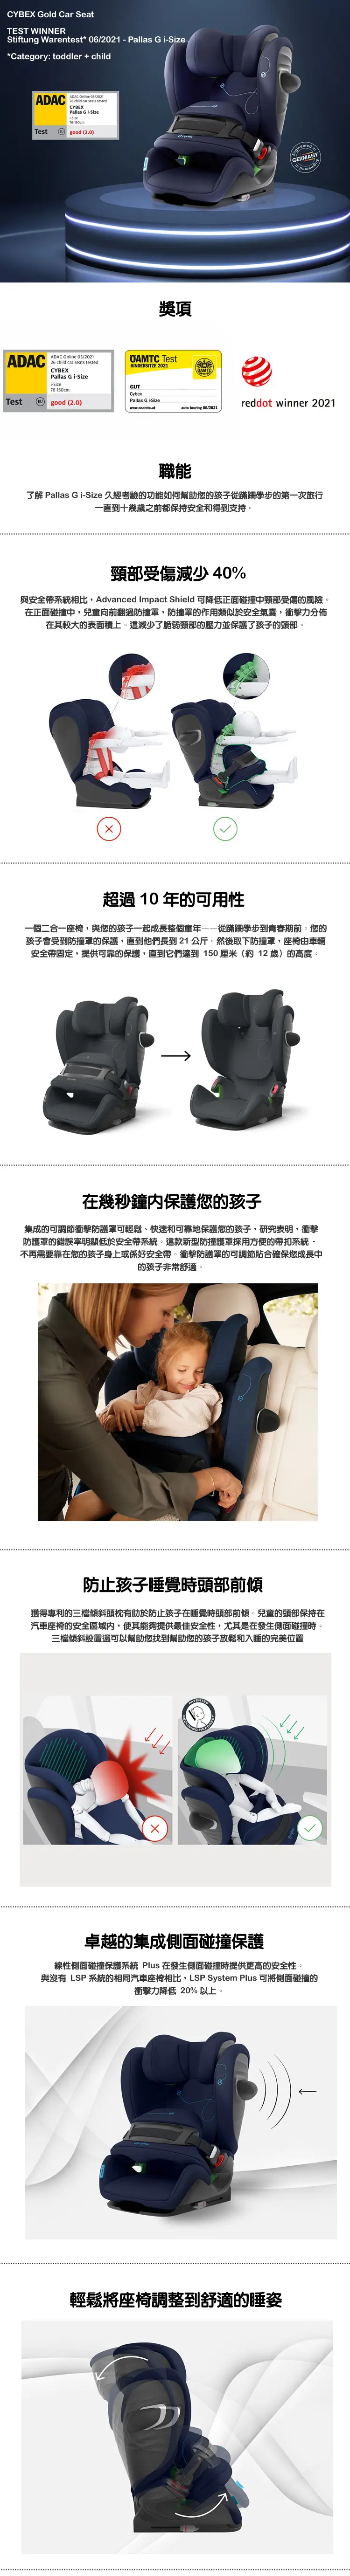 Cybex PALLAS G i-Size 嬰幼兒汽車安全座椅